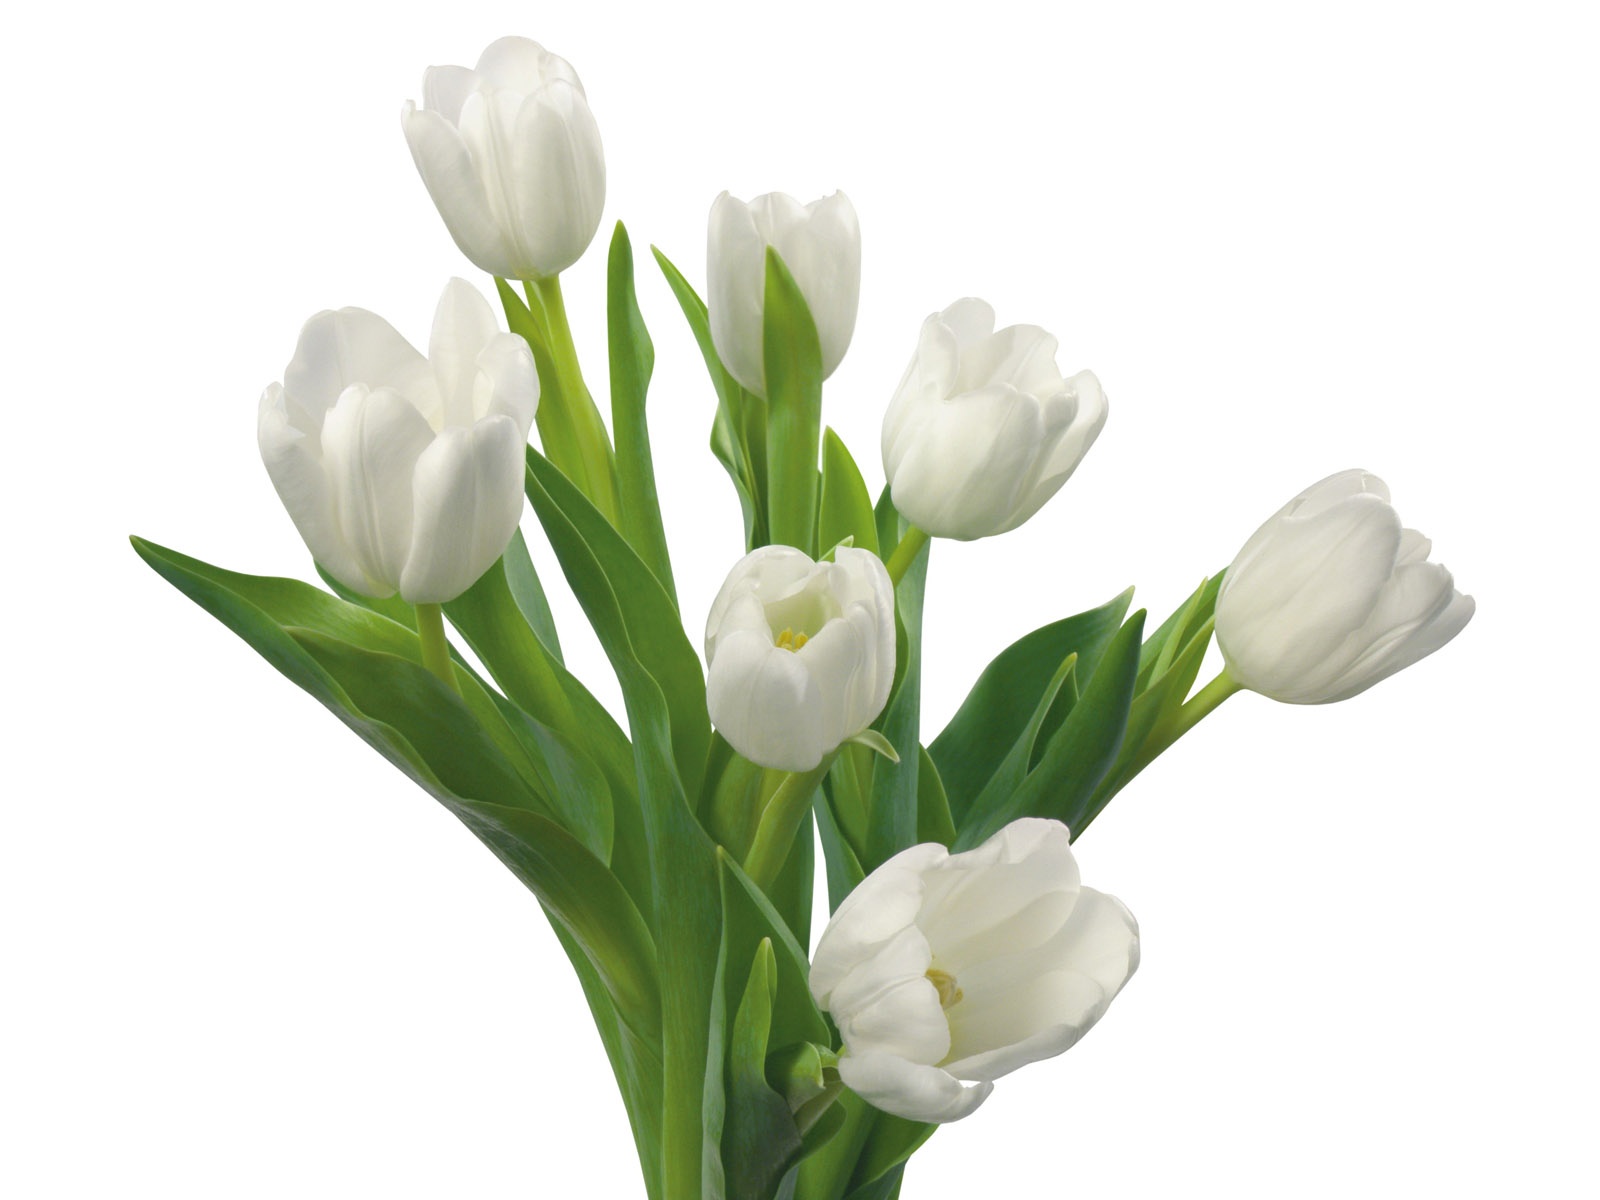 눈같이 흰 꽃 벽지 #11 - 1600x1200